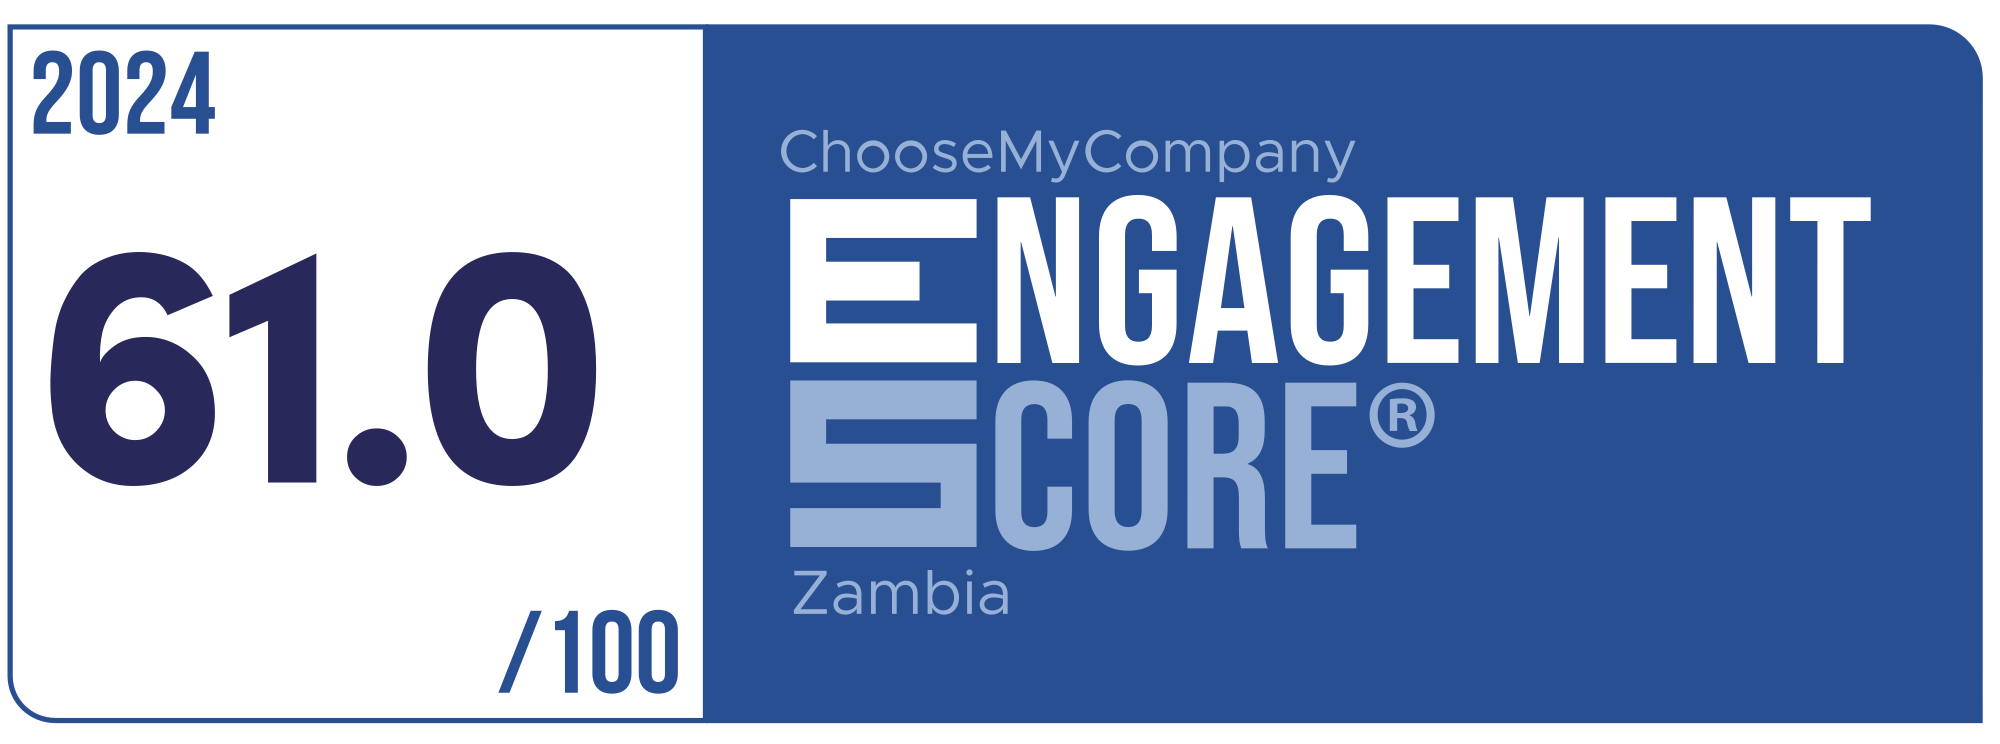 Label Engagement Score 2024 Zambia